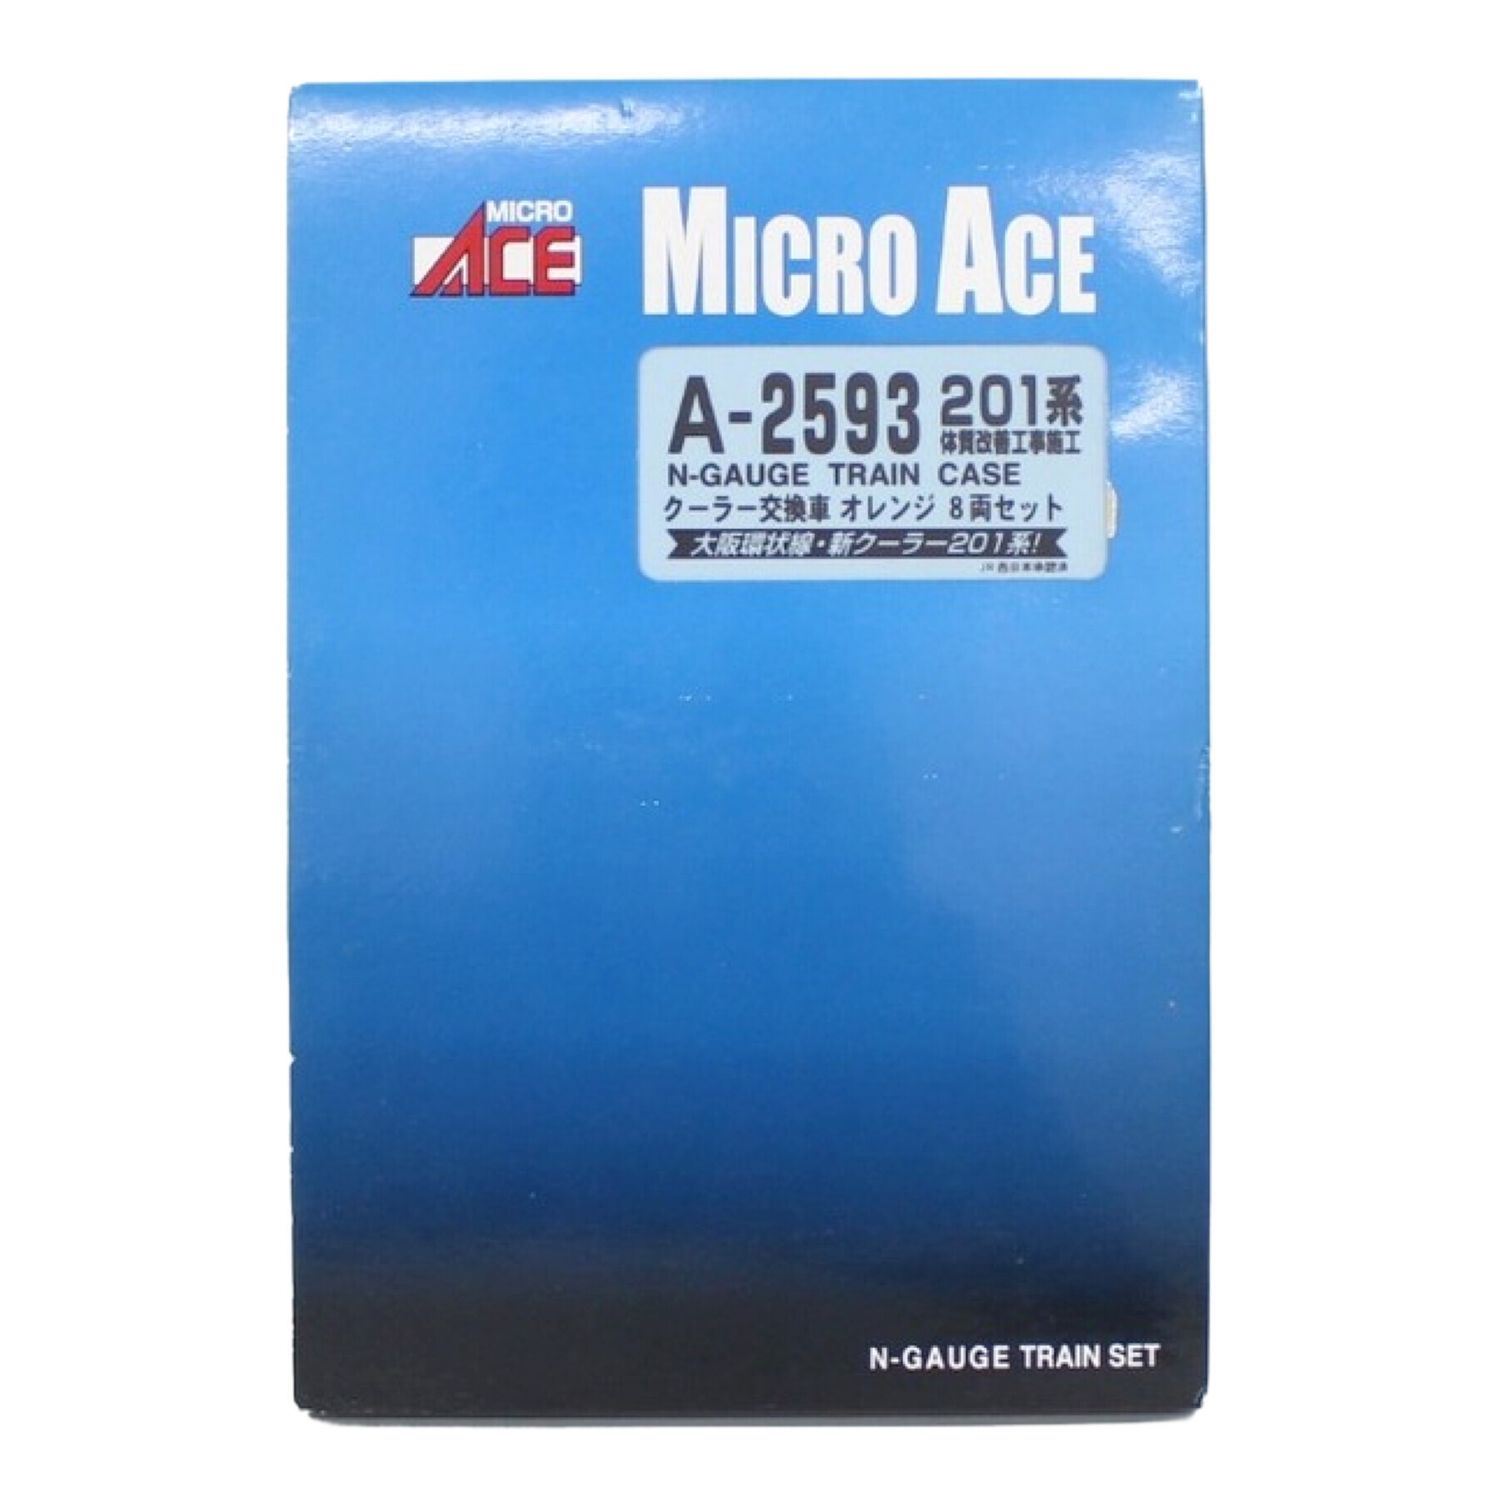 MICRO ACE (マイクロエース) Nゲージ クーラー交換車 オレンジ 8両